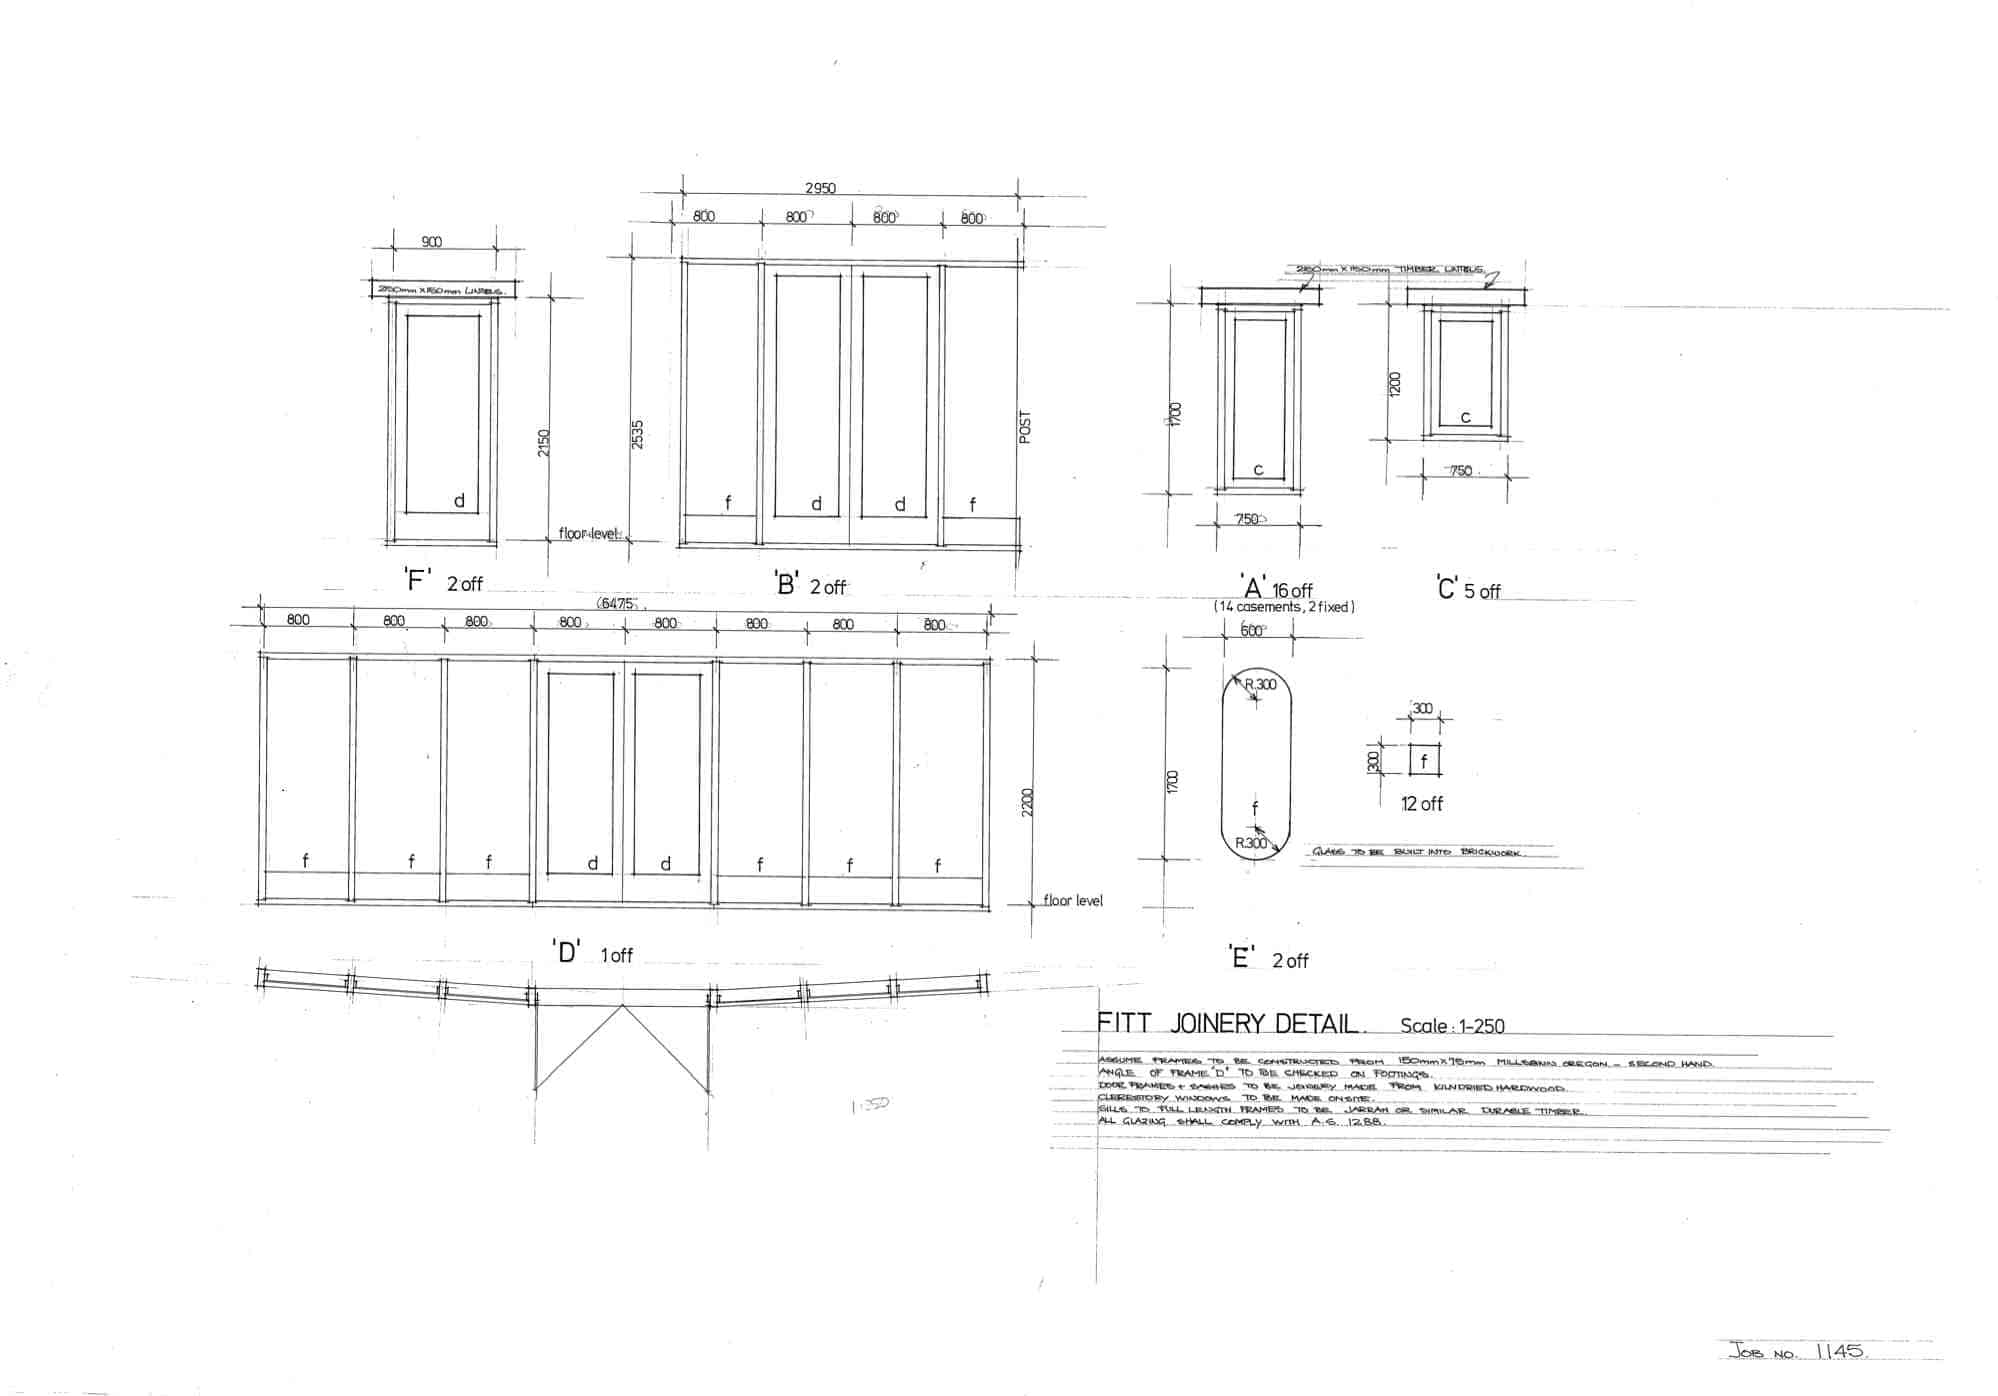 Fitt, 6: joinery details